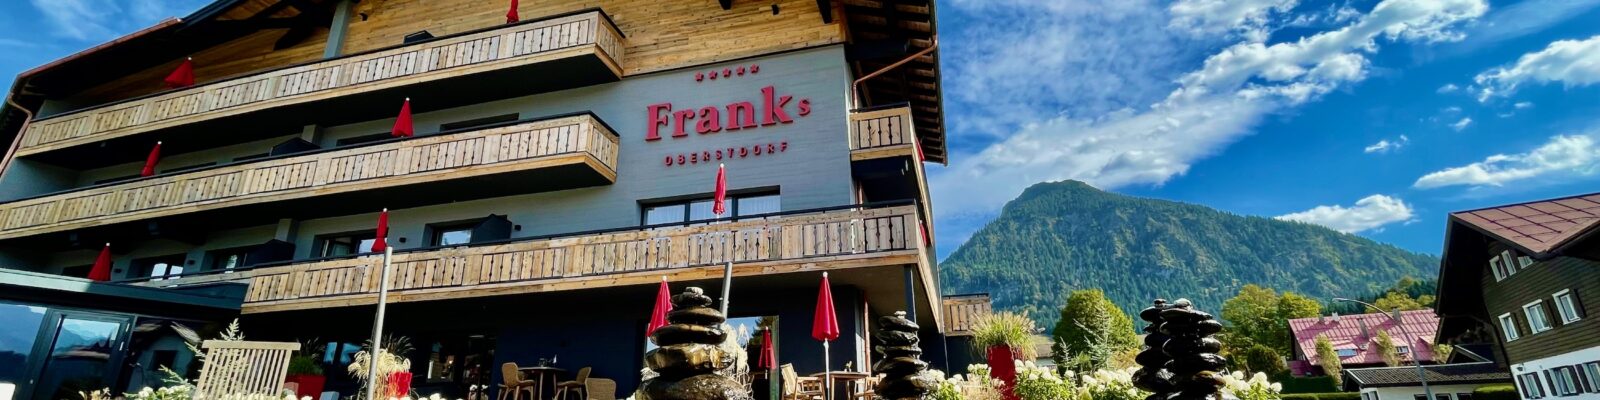 Auf dem Gipfel der Entspannung: Hotel Franks Oberstdorf - Zeit bei Freunden